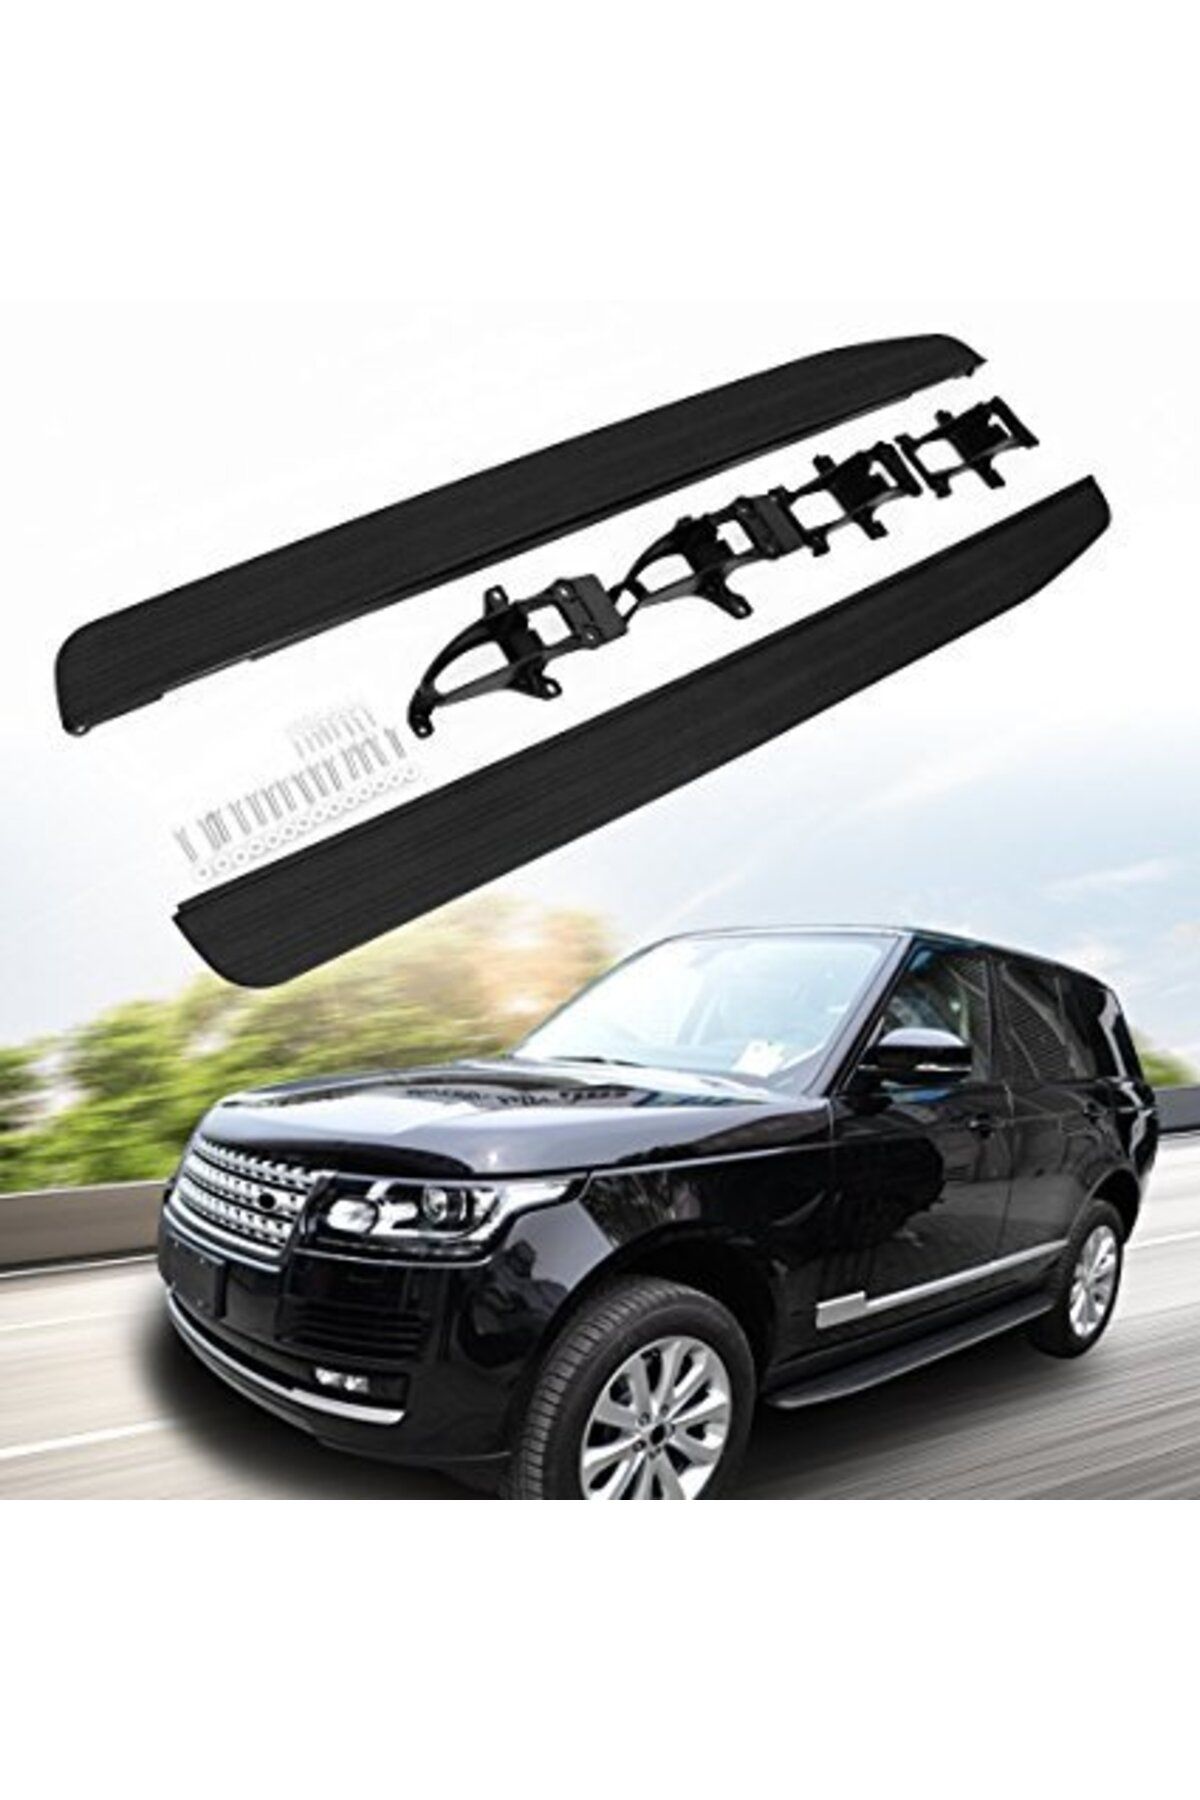 Niken Range Rover Sport Yan Basamak Marşbiyel Koruma 2014+